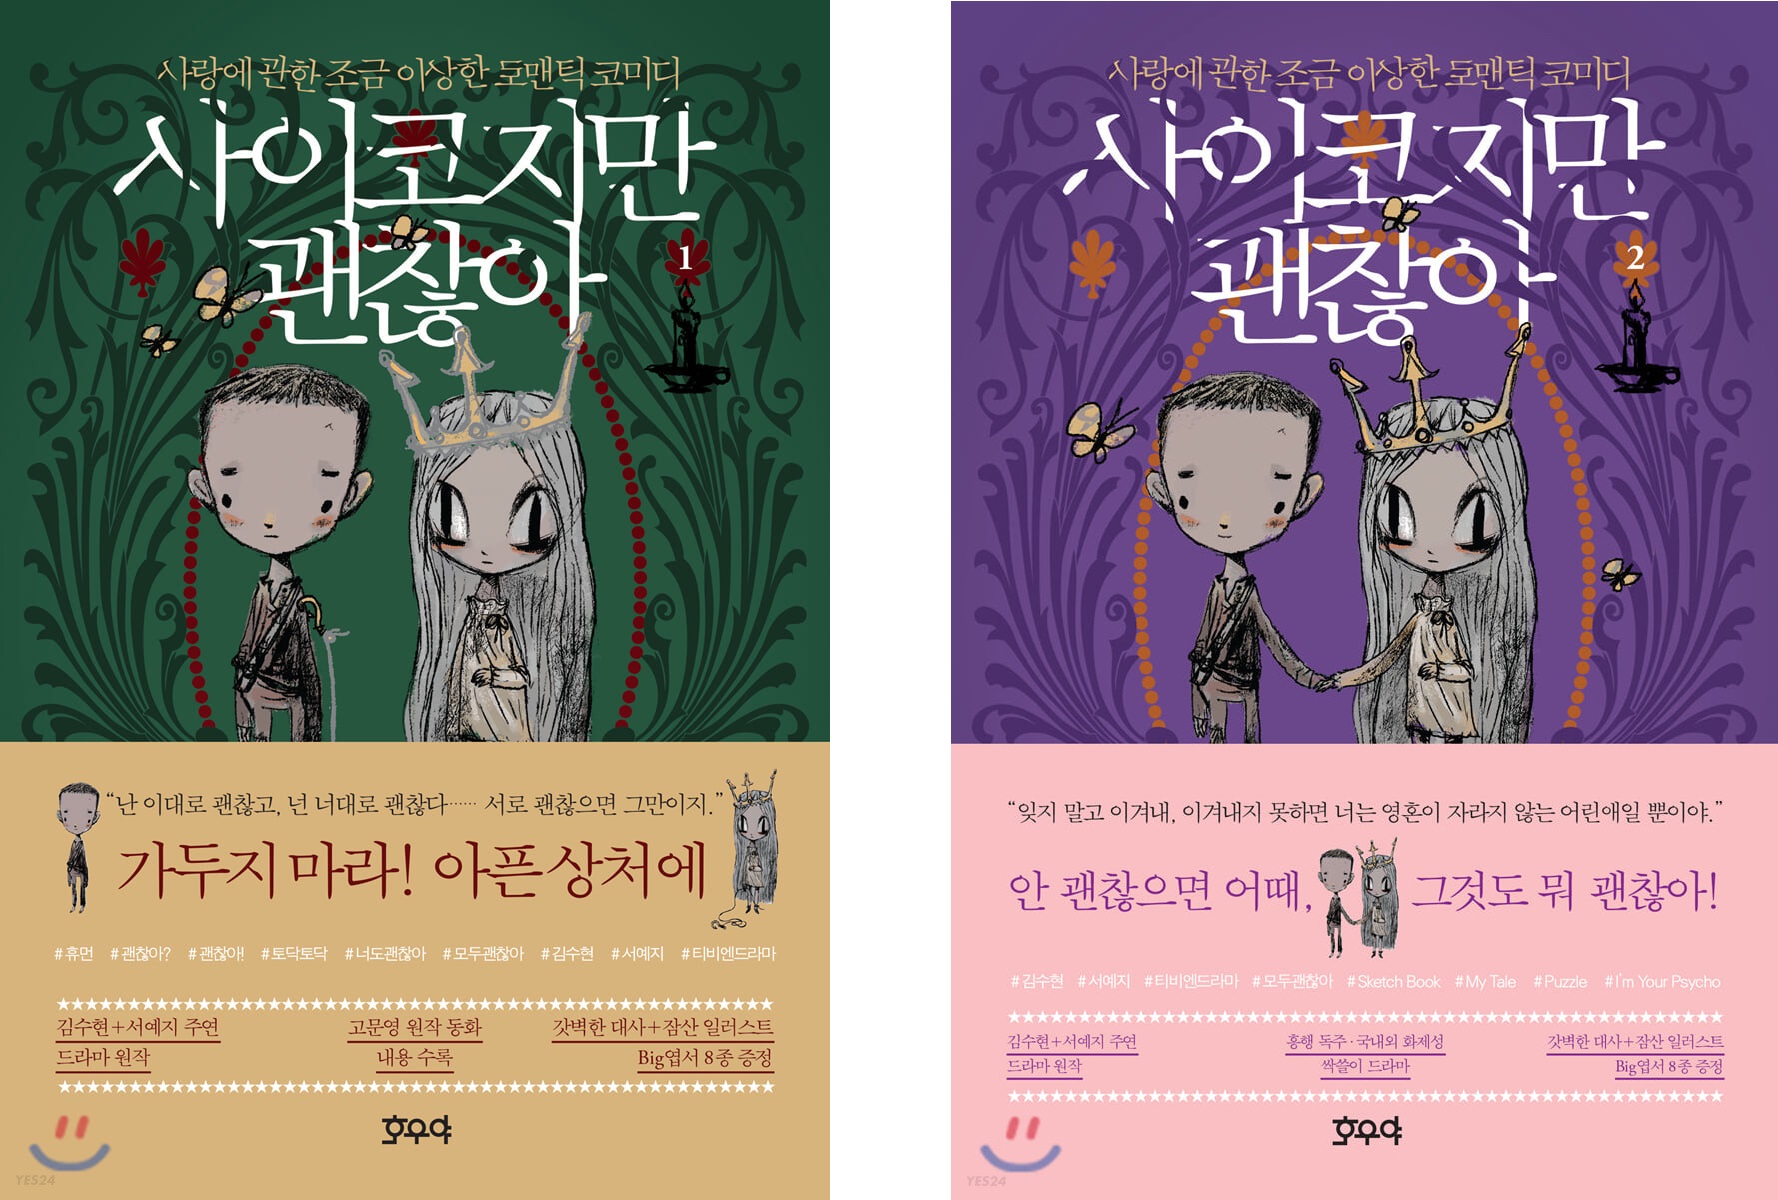 فیلم نامه سریال کره ای مشکلی نیست خوب نباشی It’s Okay to Not Be Okay 2020 از فروشگاه کتاب سارانگ